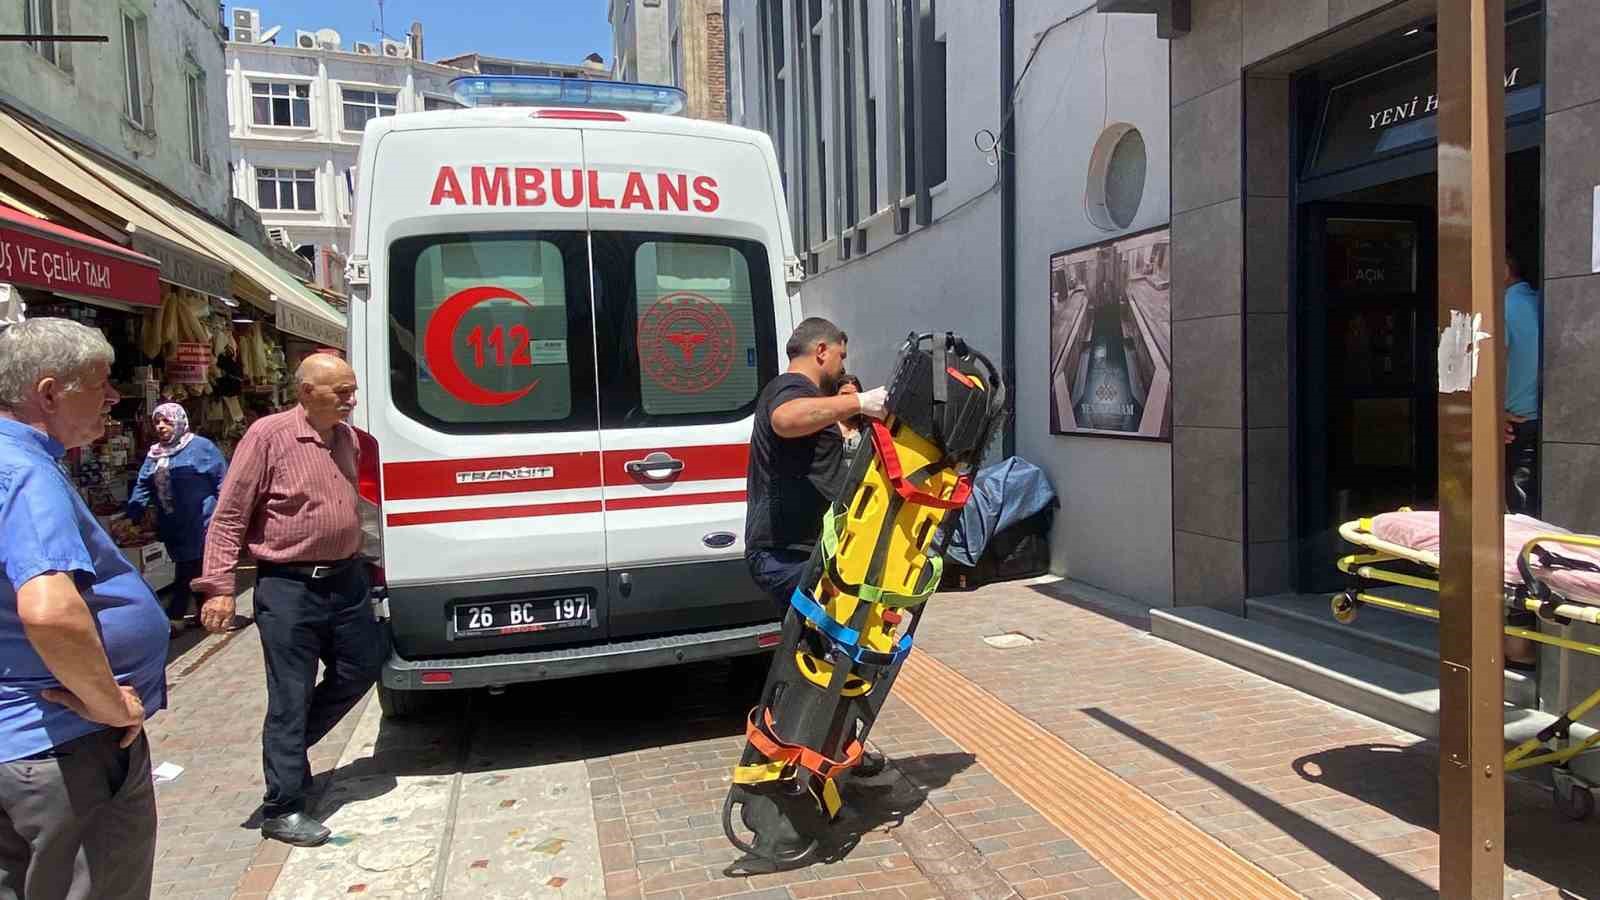 Hamamda düşerek başını çarpan 70 yaşındaki adam ambulansta hayata döndürüldü